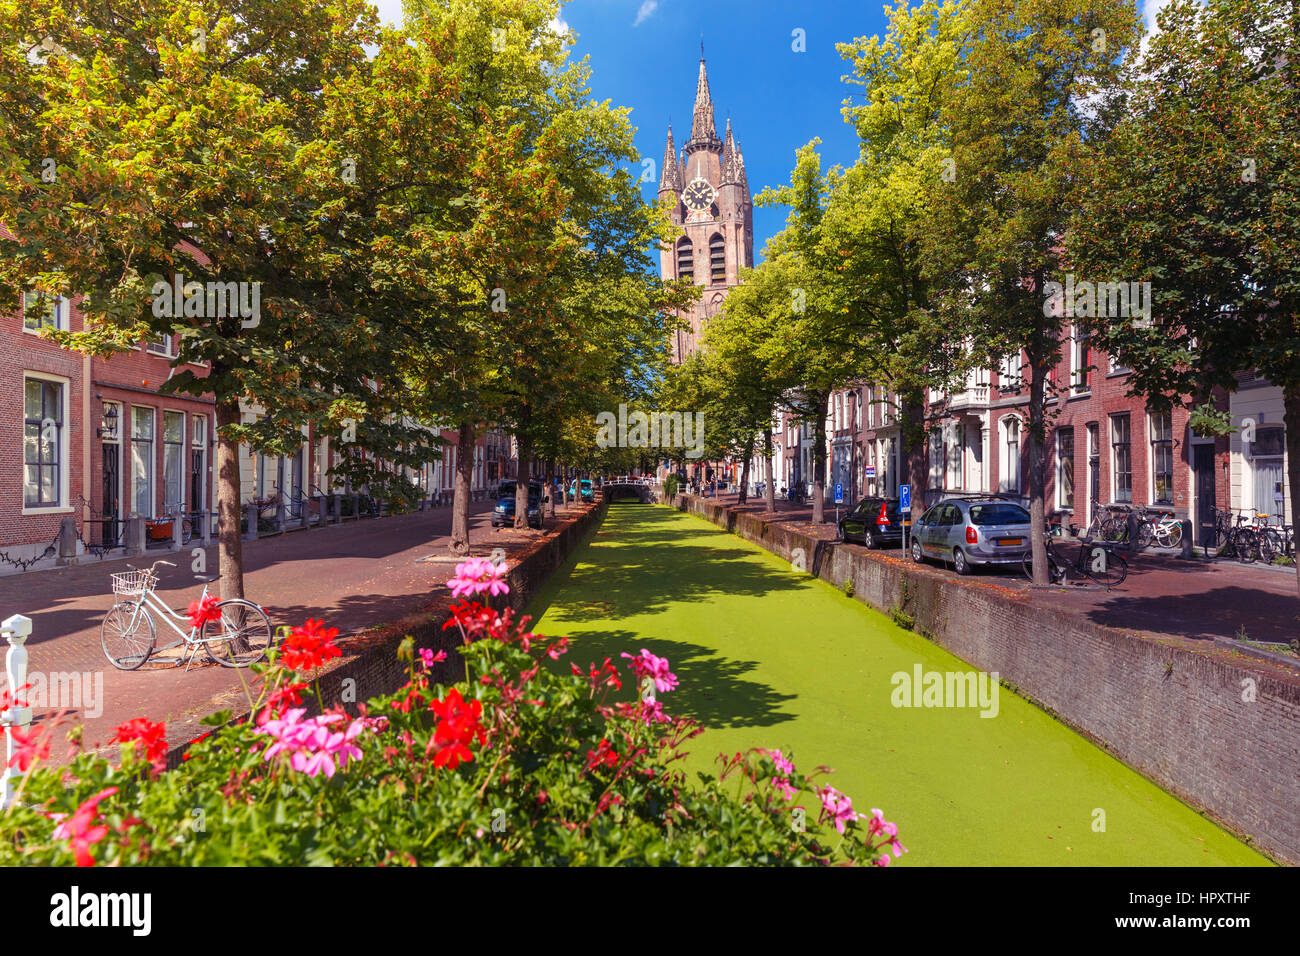 Die malerischen Oude Delft Kanal und schiefen Turm der gotischen protestantischen Oude Kerk Kirche an einem sonnigen Tag in Delft, Zuid-Holland, Niederlande. Stockfoto